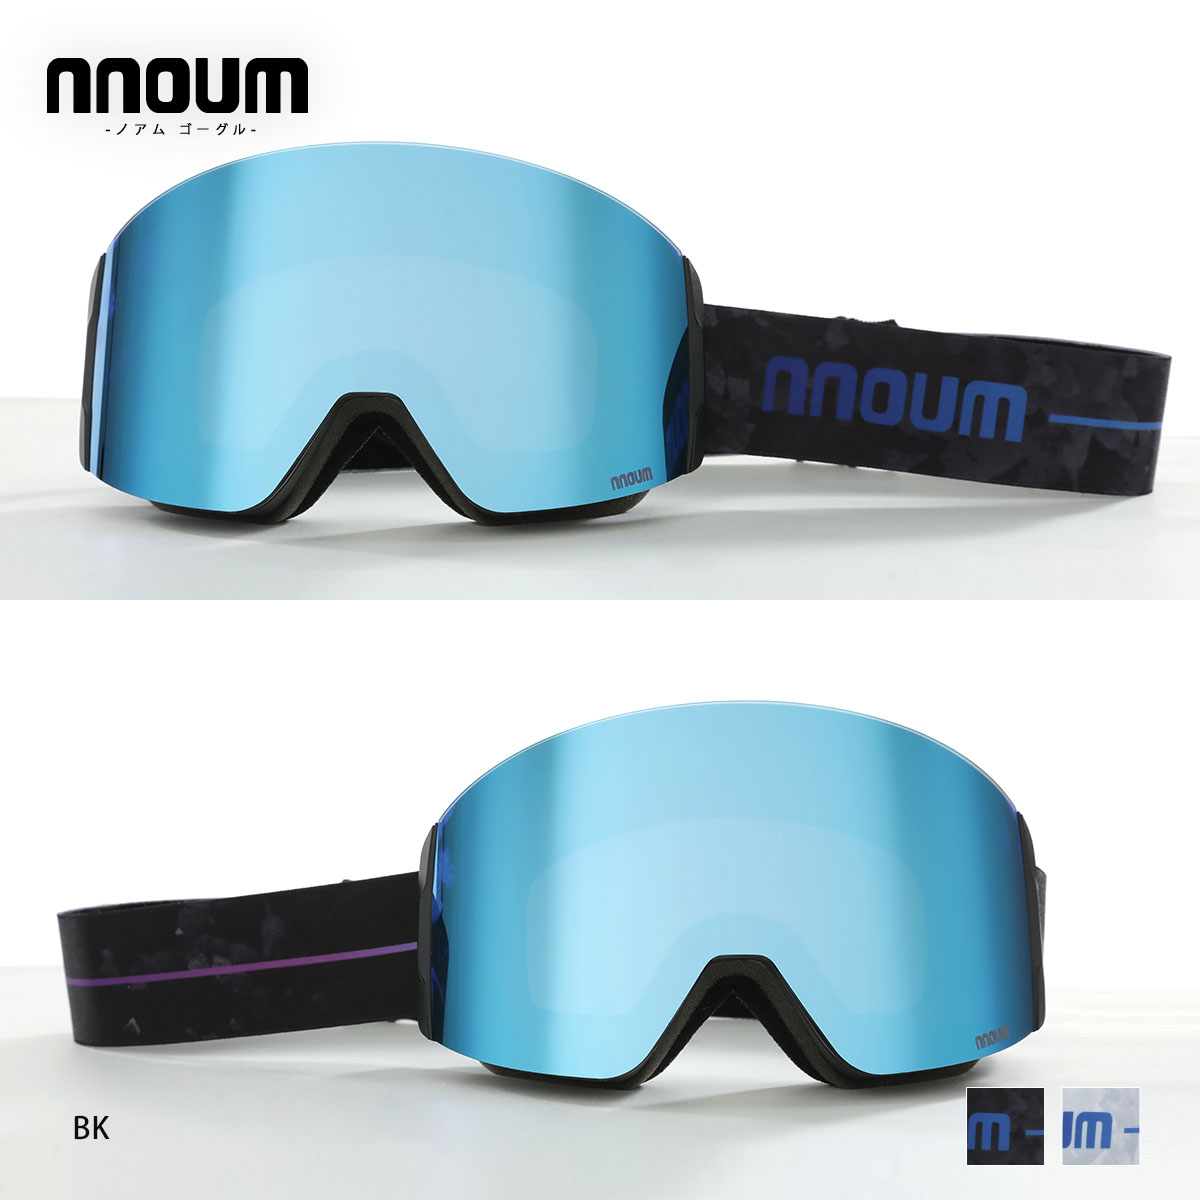 スキー ゴーグル スノーボード スノボー メンズ レディース メガネ 眼鏡対応 NNOUM ノアム 曇り止加工 スペアレンズ付き 収納袋付き